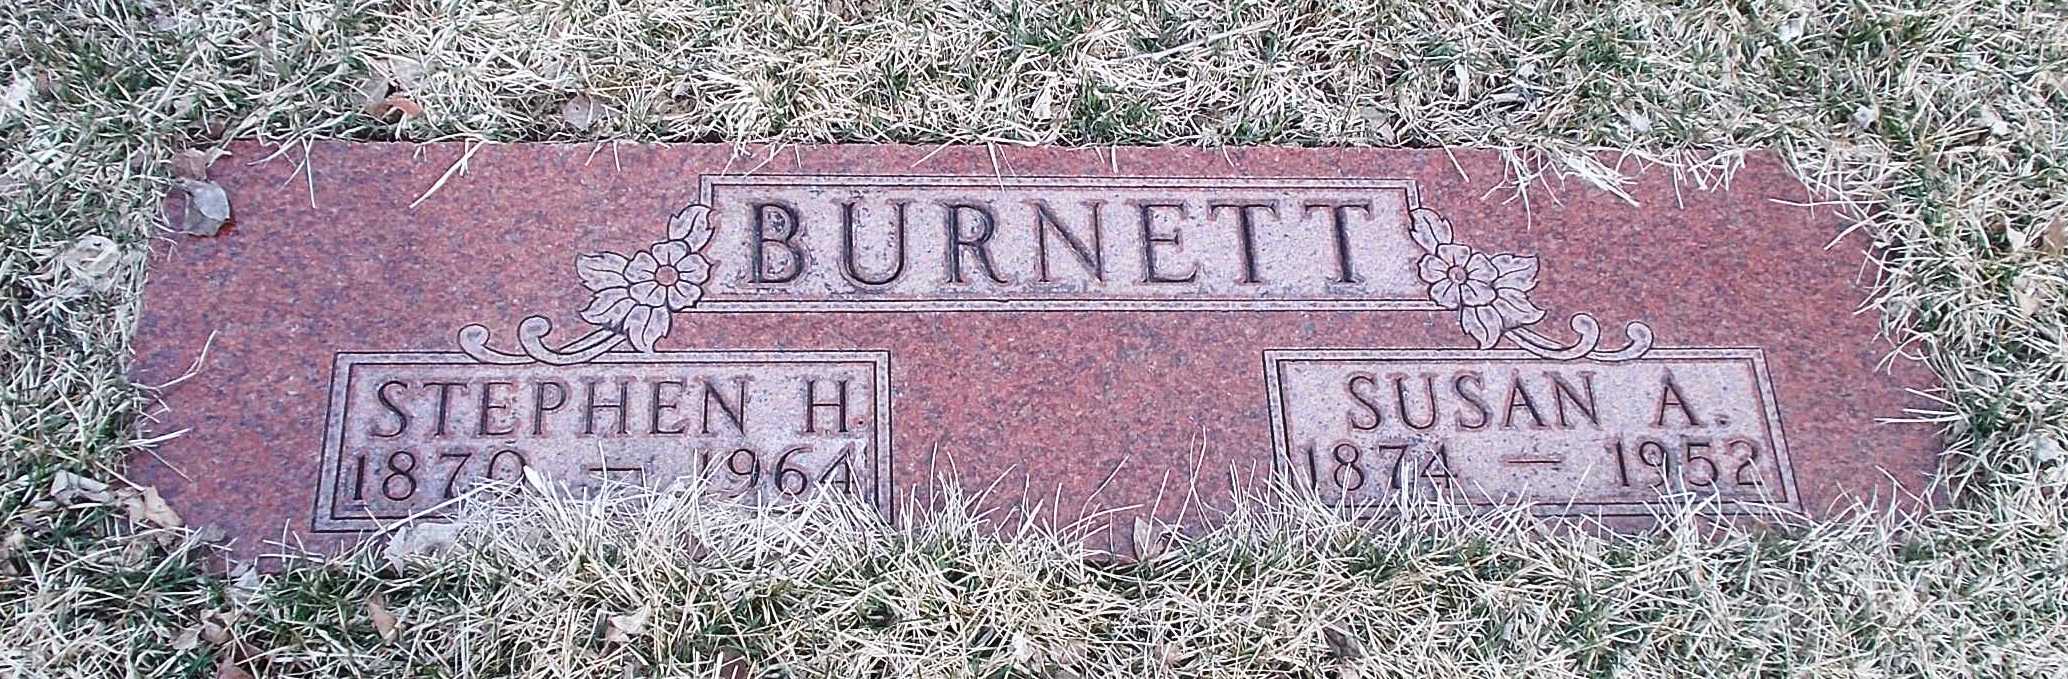 Susan A Burnett